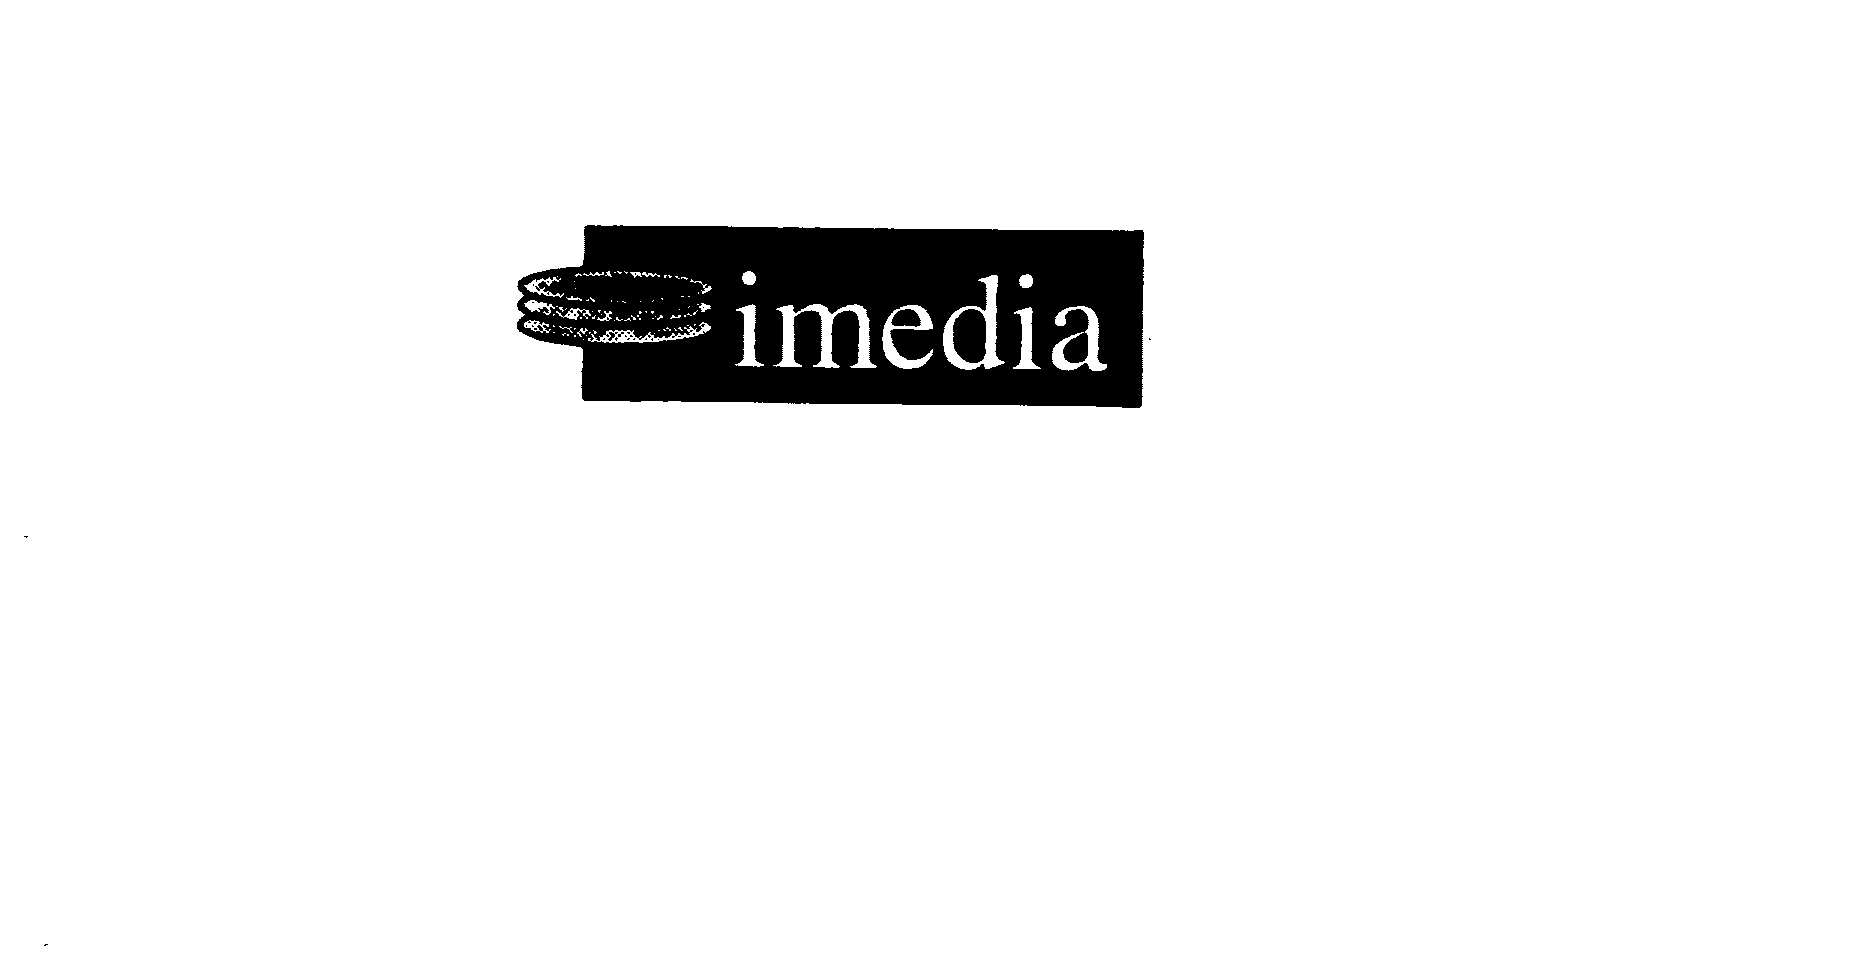 Trademark Logo IMEDIA